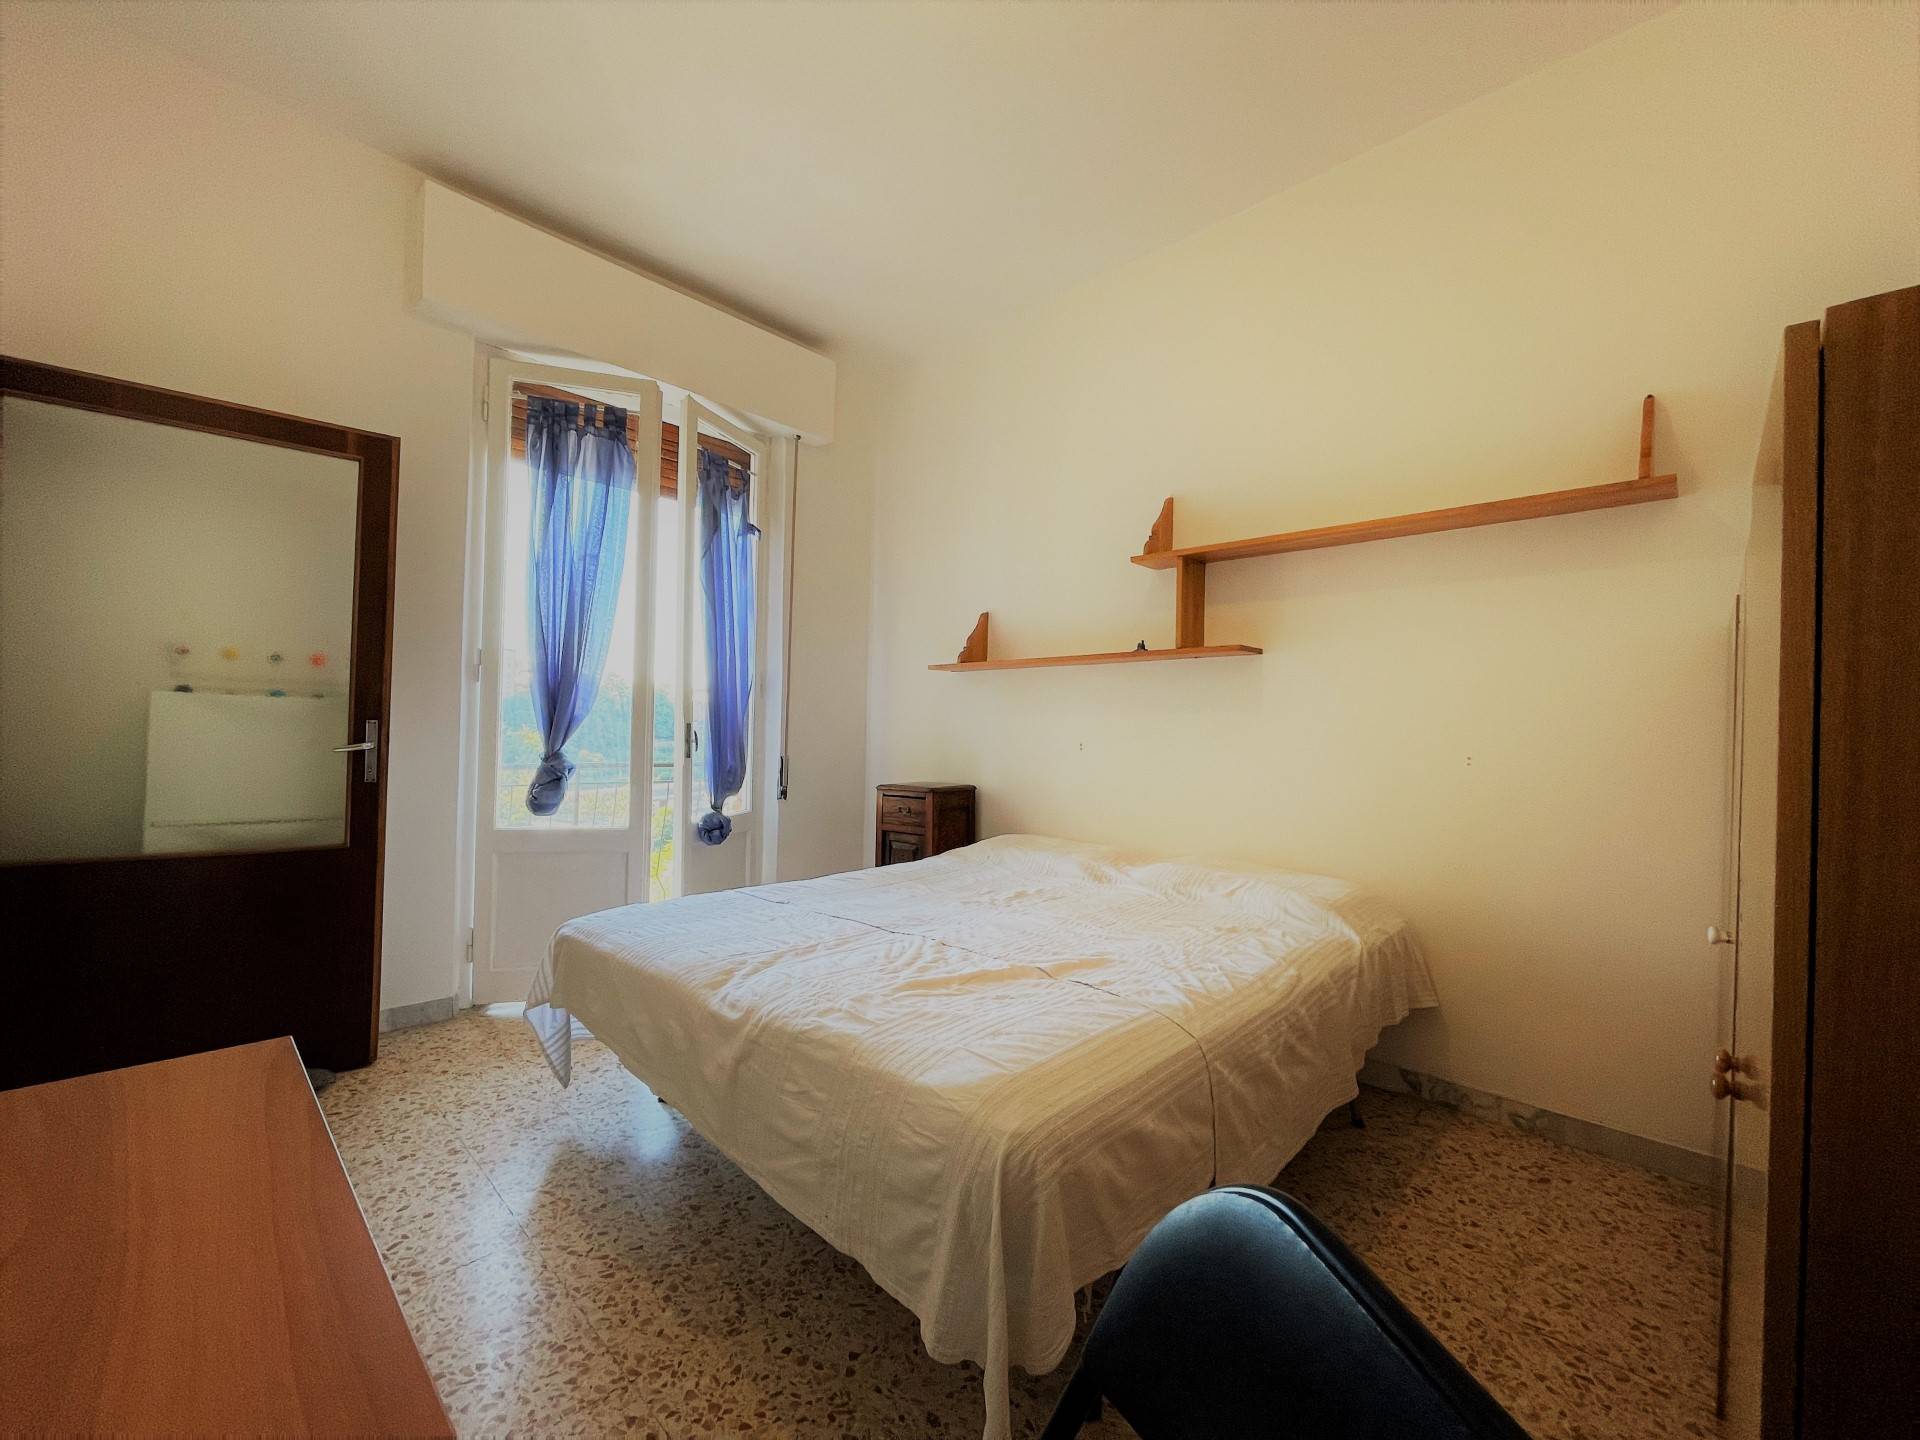 Außerhalb der Stadtmauern von Siena, in der Pescaia Gegend, gut mit öffentlichen Verkehrsmitteln, bieten wir eine Wohnung mit vier Schlafzimmern im 